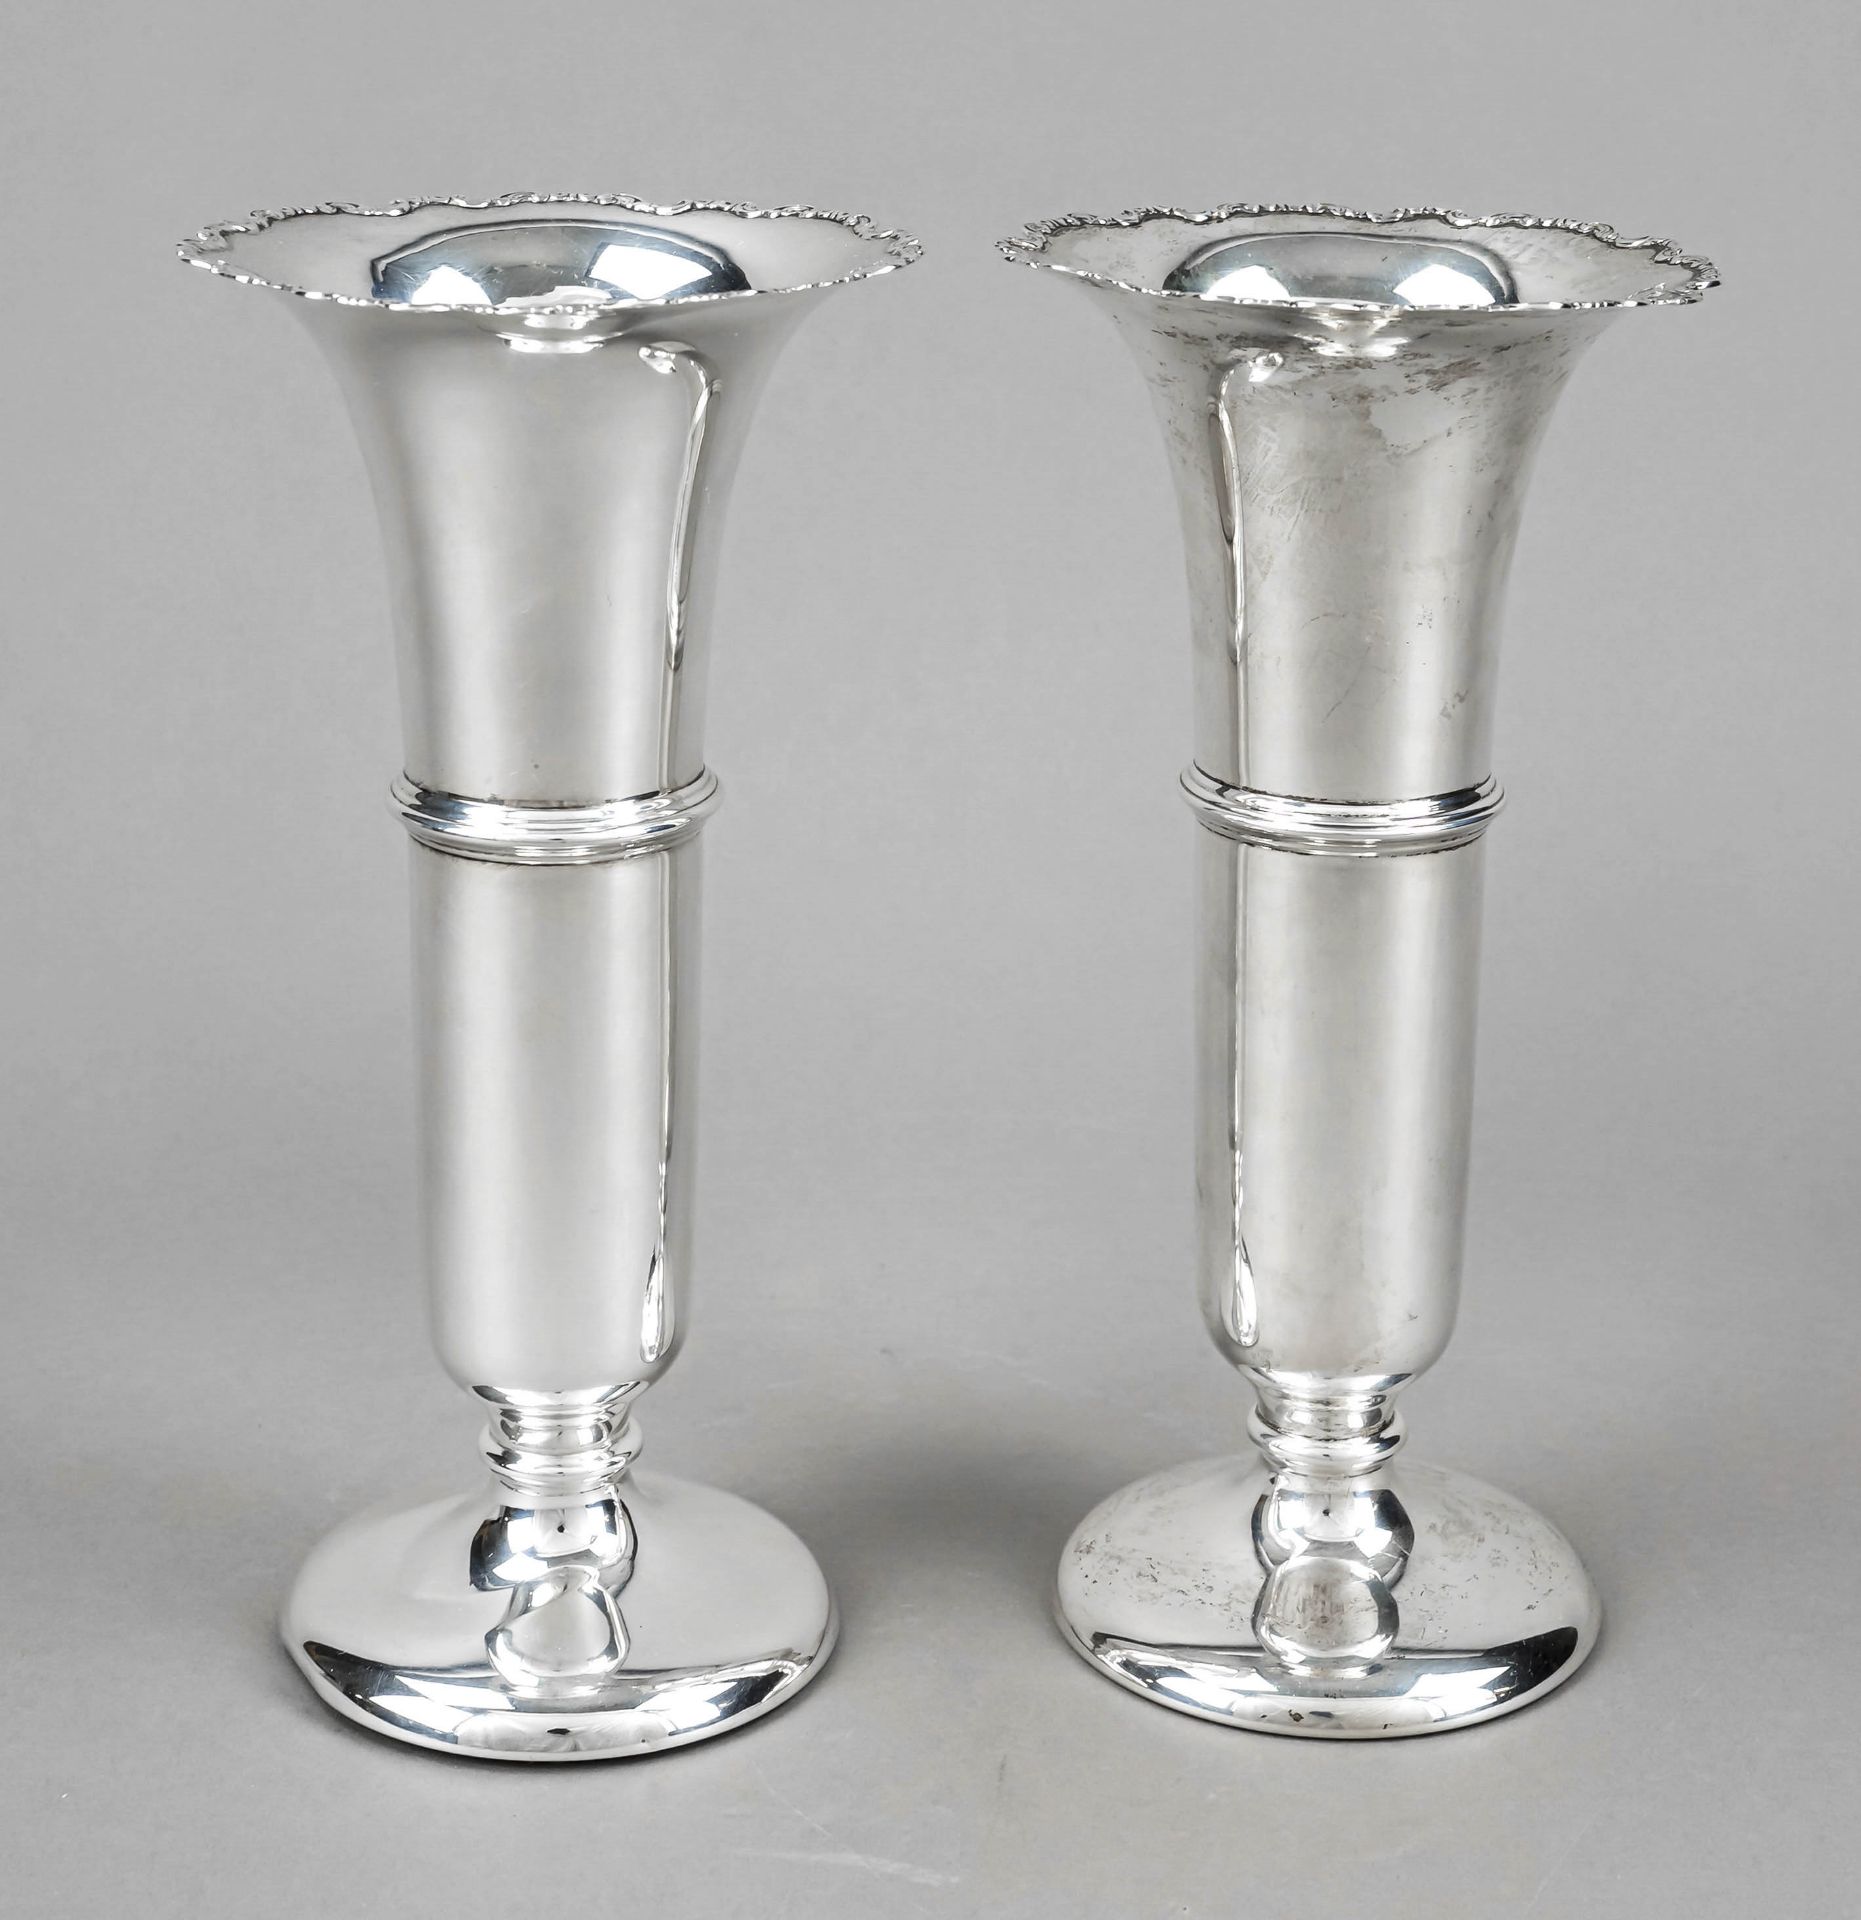 Pair of vases, England, 1929/30, maker's mark William Neale & Son, Ltd, Birmingham, sterling